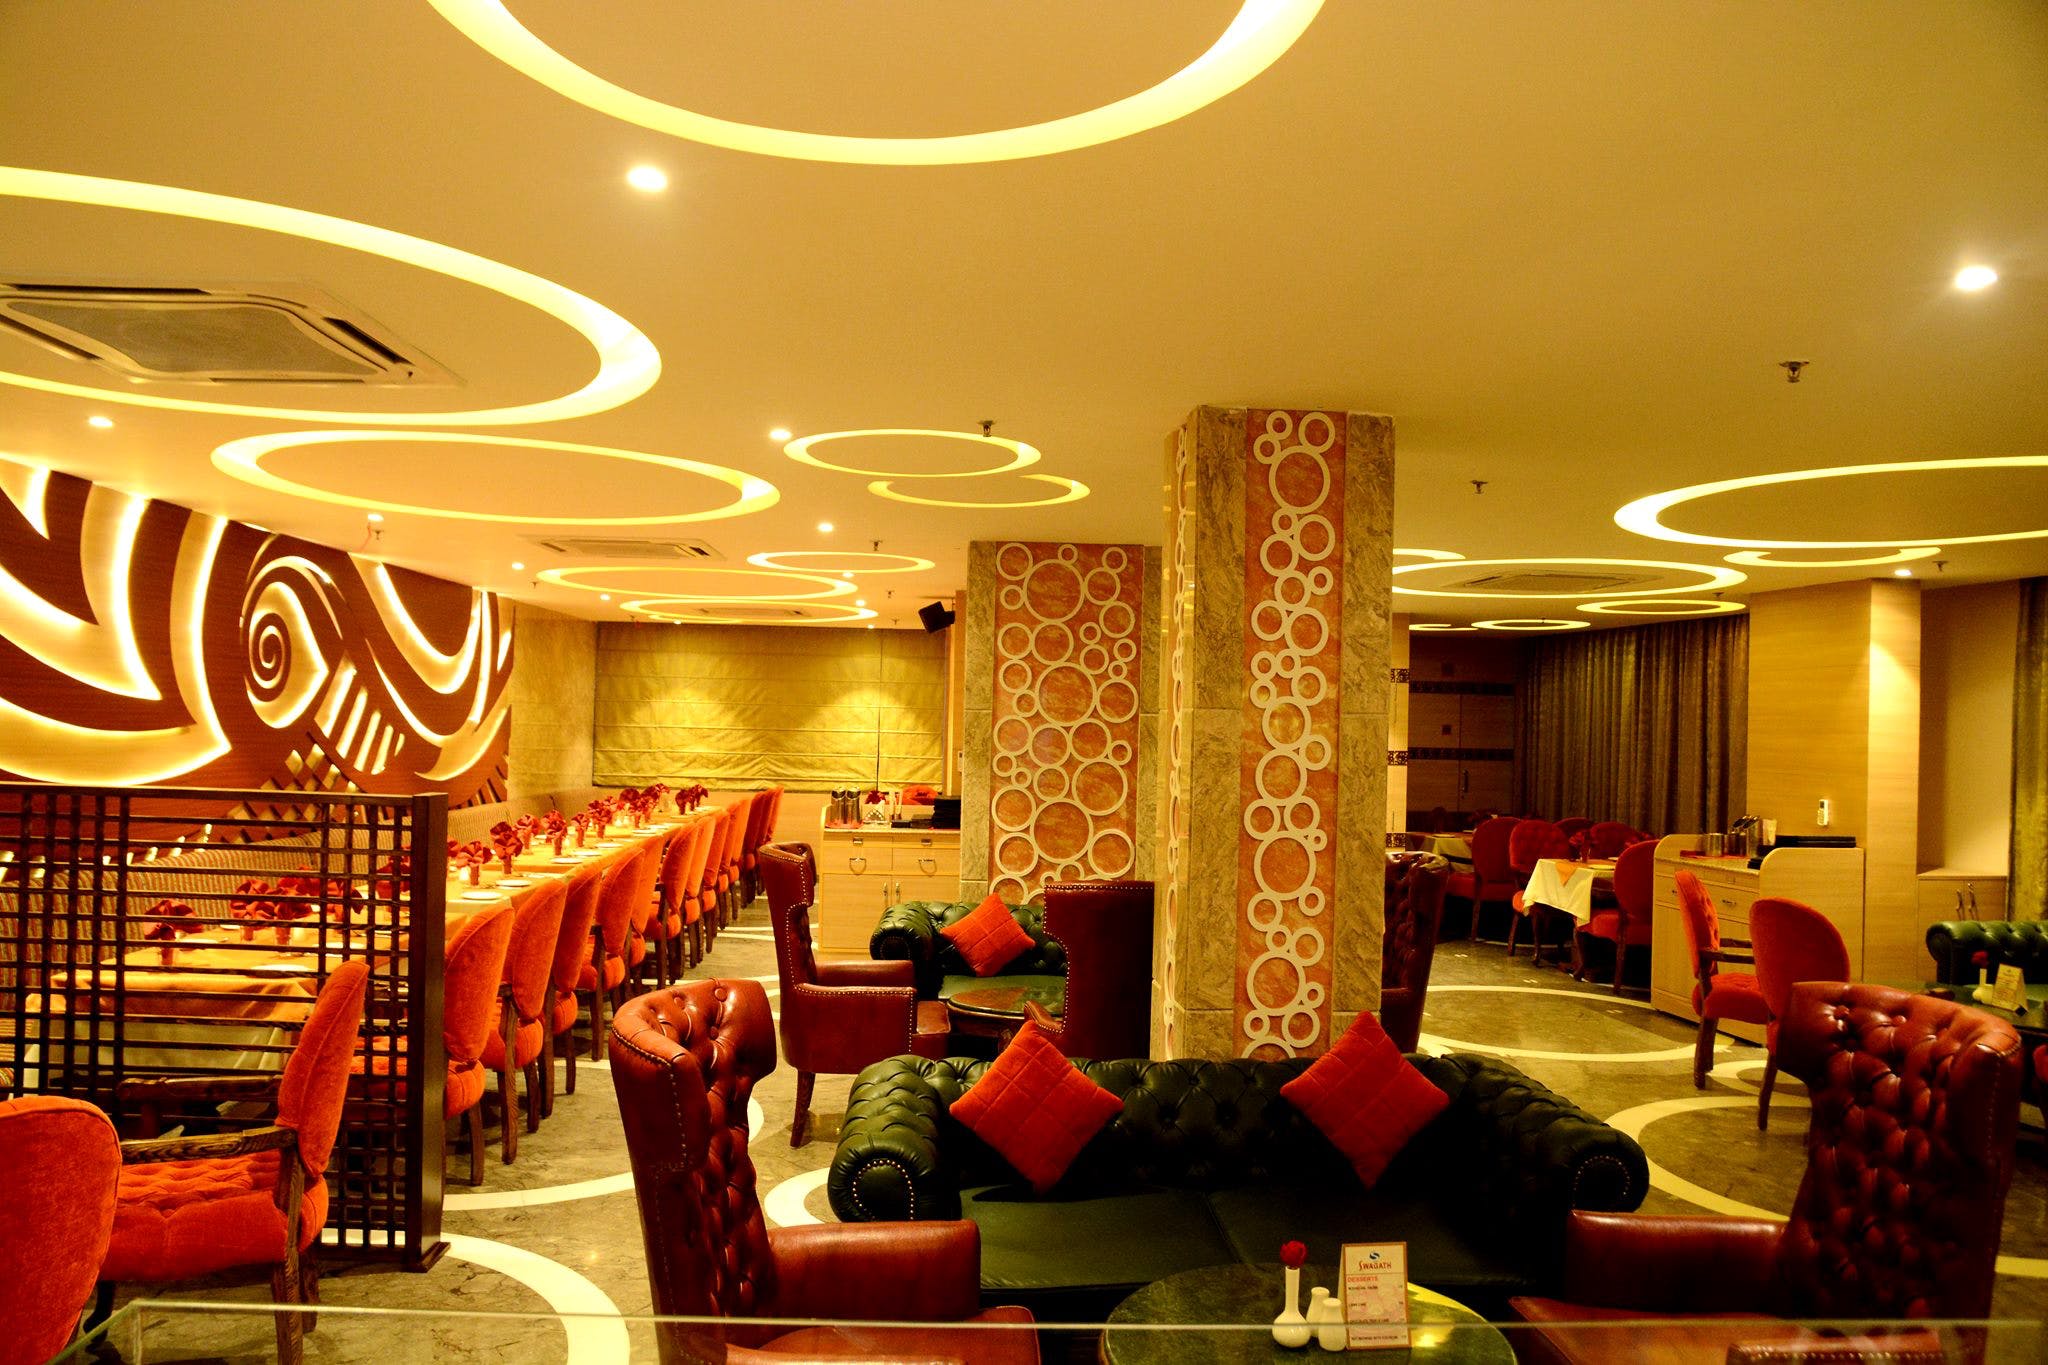 Lobby,Interior design,Room,Building,Ceiling,Lighting,Hotel,Restaurant,Suite,Furniture